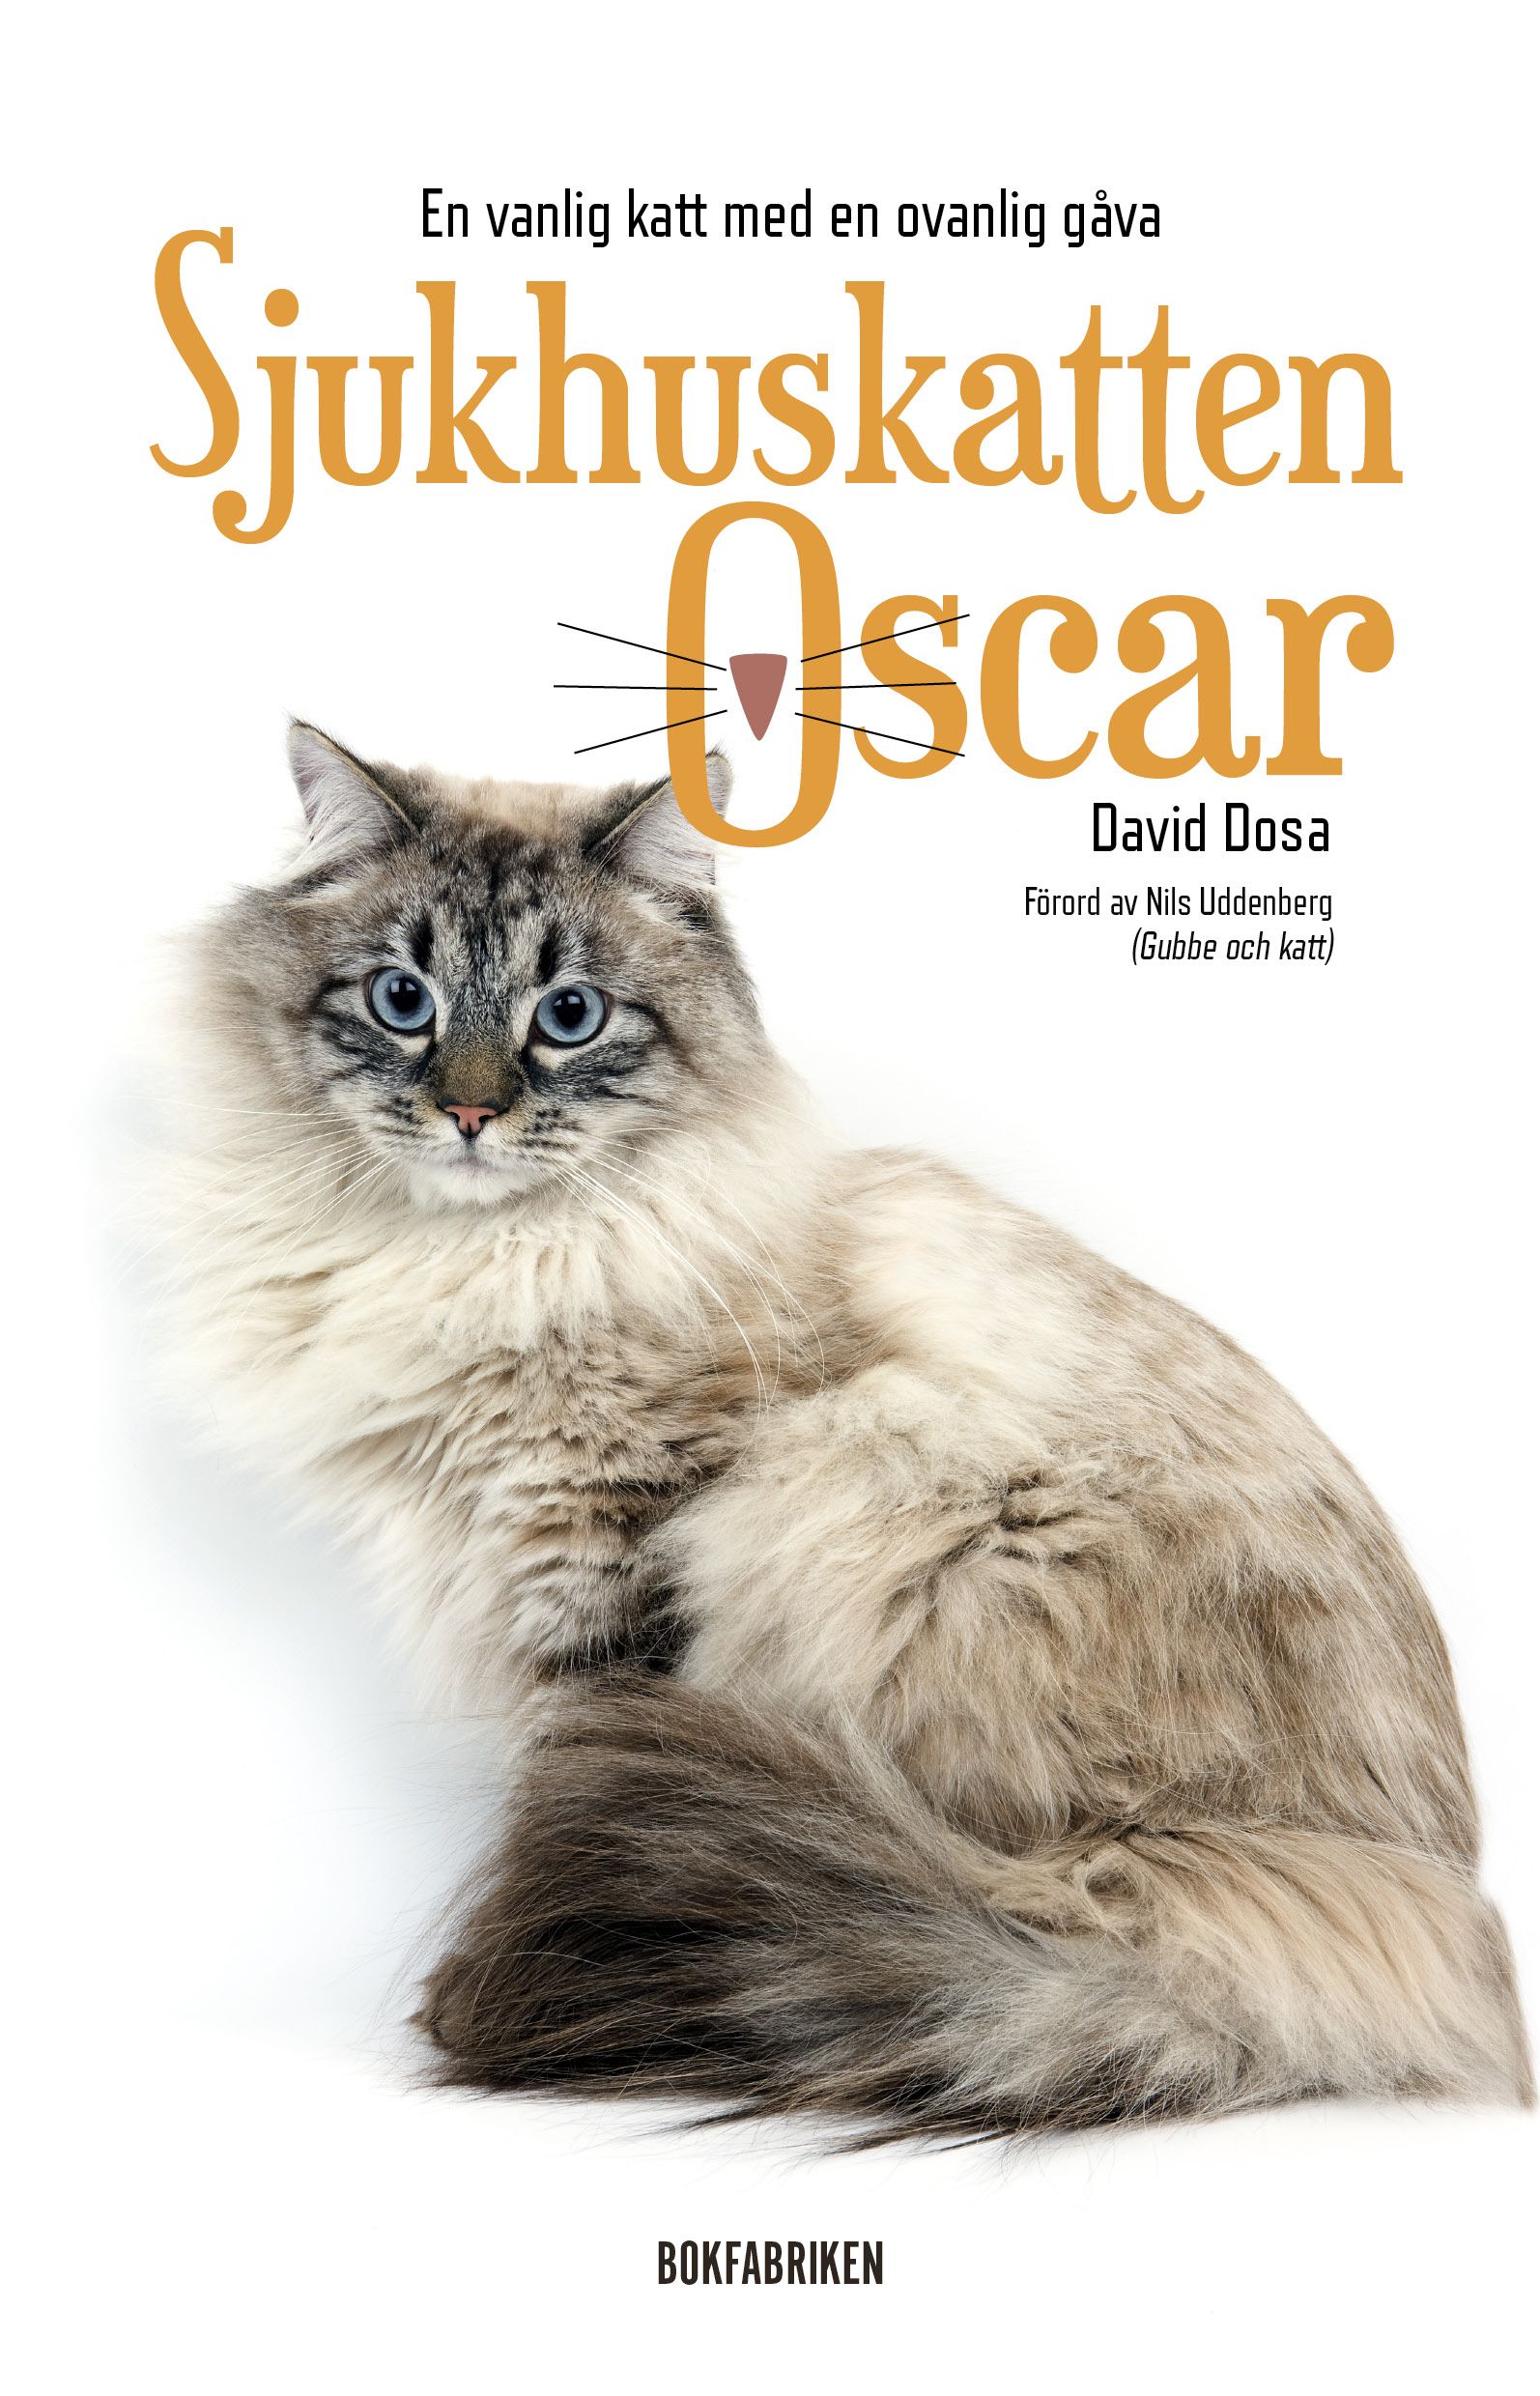 Sjukhuskatten Oscar : En vanlig katt med en ovanlig gåva, e-bok av David Dosa